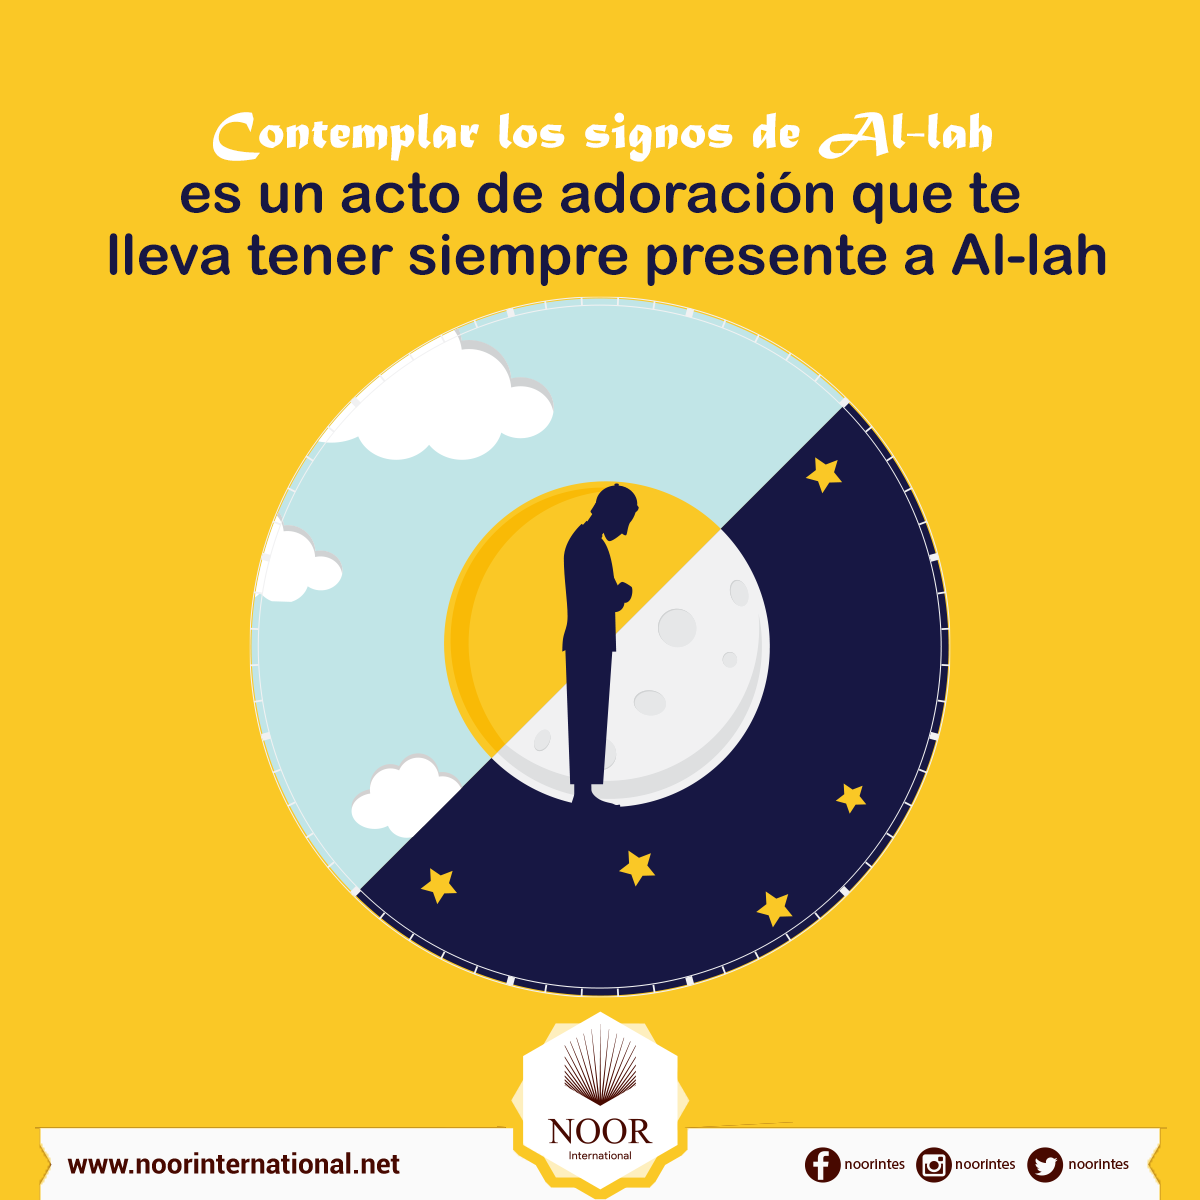 Contemplar los signos de Al-lah es un acto de adoración que te lleva tener siempre presente a Al-lah